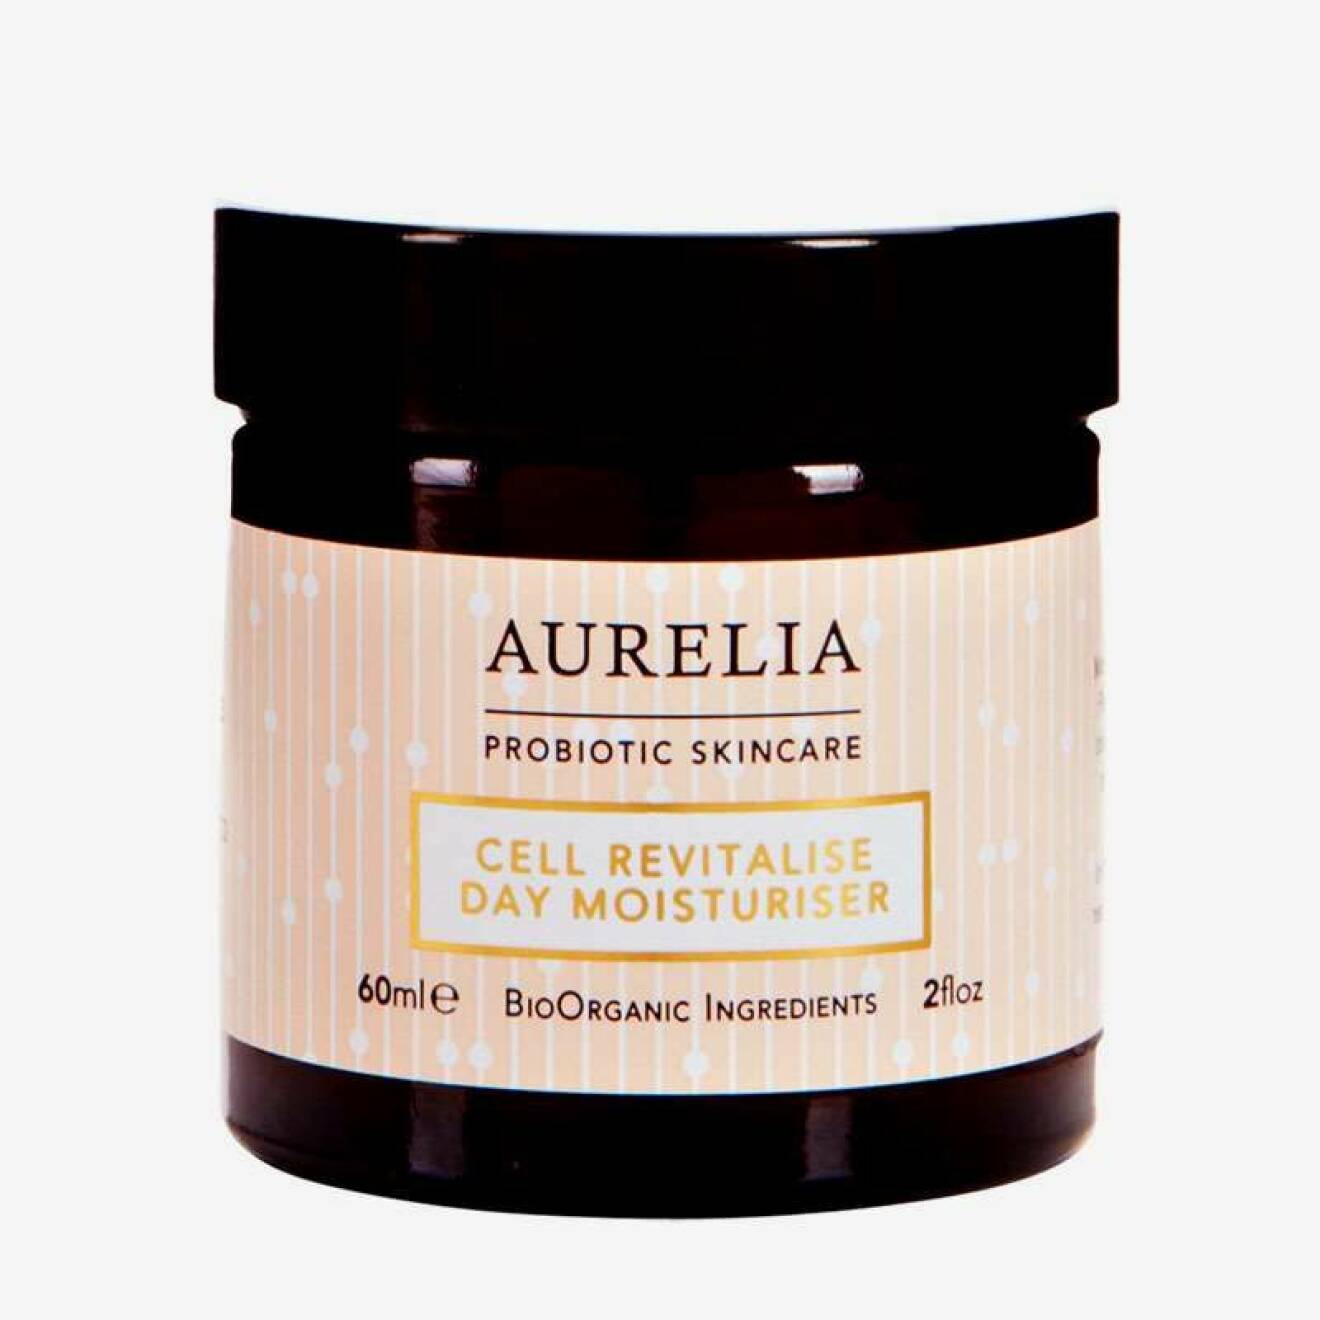 En bild på produkten Aurelia – Cell Revitalize Day Moisturiser, en ansiktskräm för dig med torr hy.